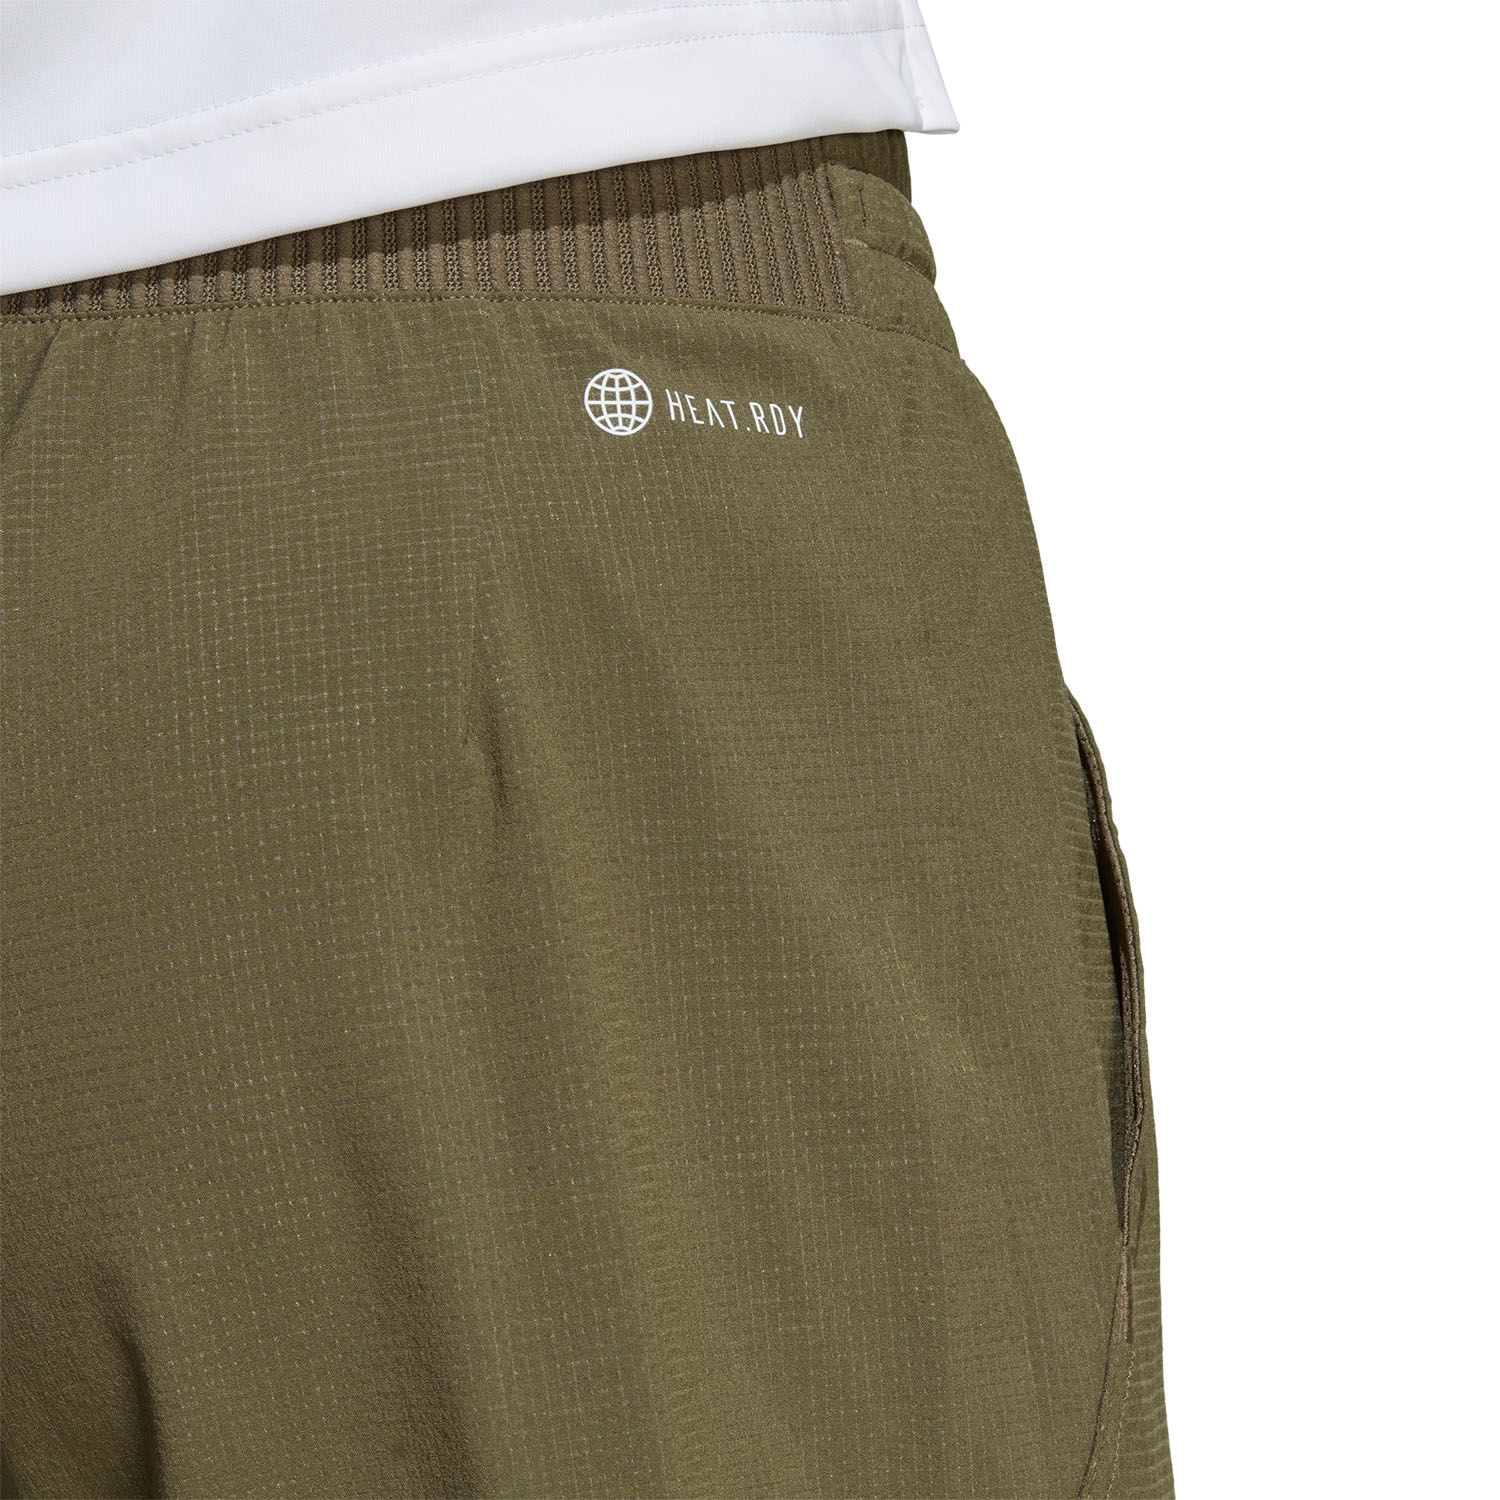 adidas Ergo 7in Shorts - Olive Strata/Wonder Taupe